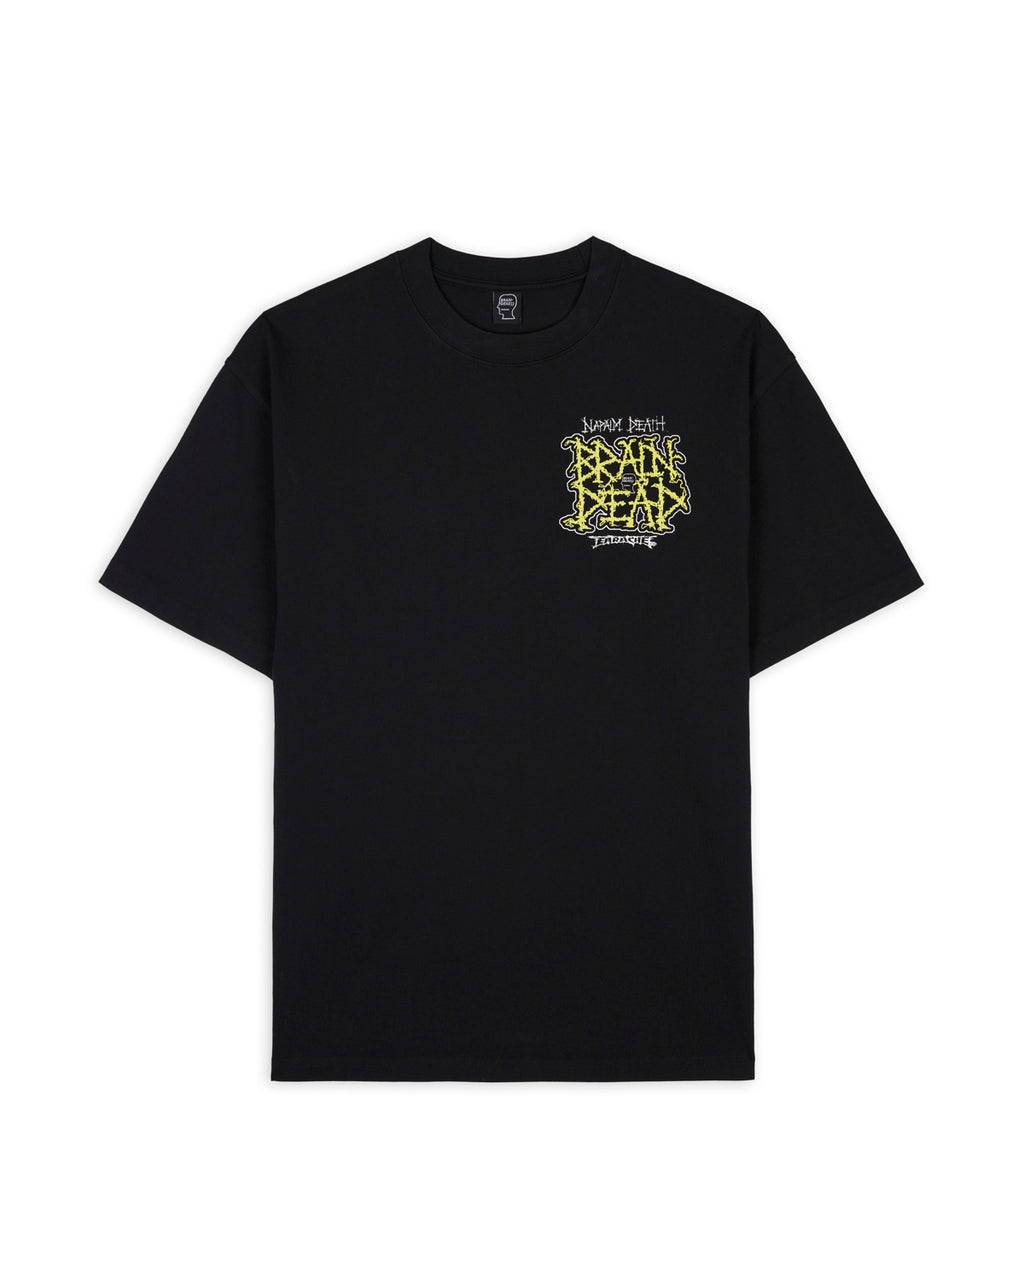 Brain Dead x Napalm Death Nuclear Scum T-Shirt- Black